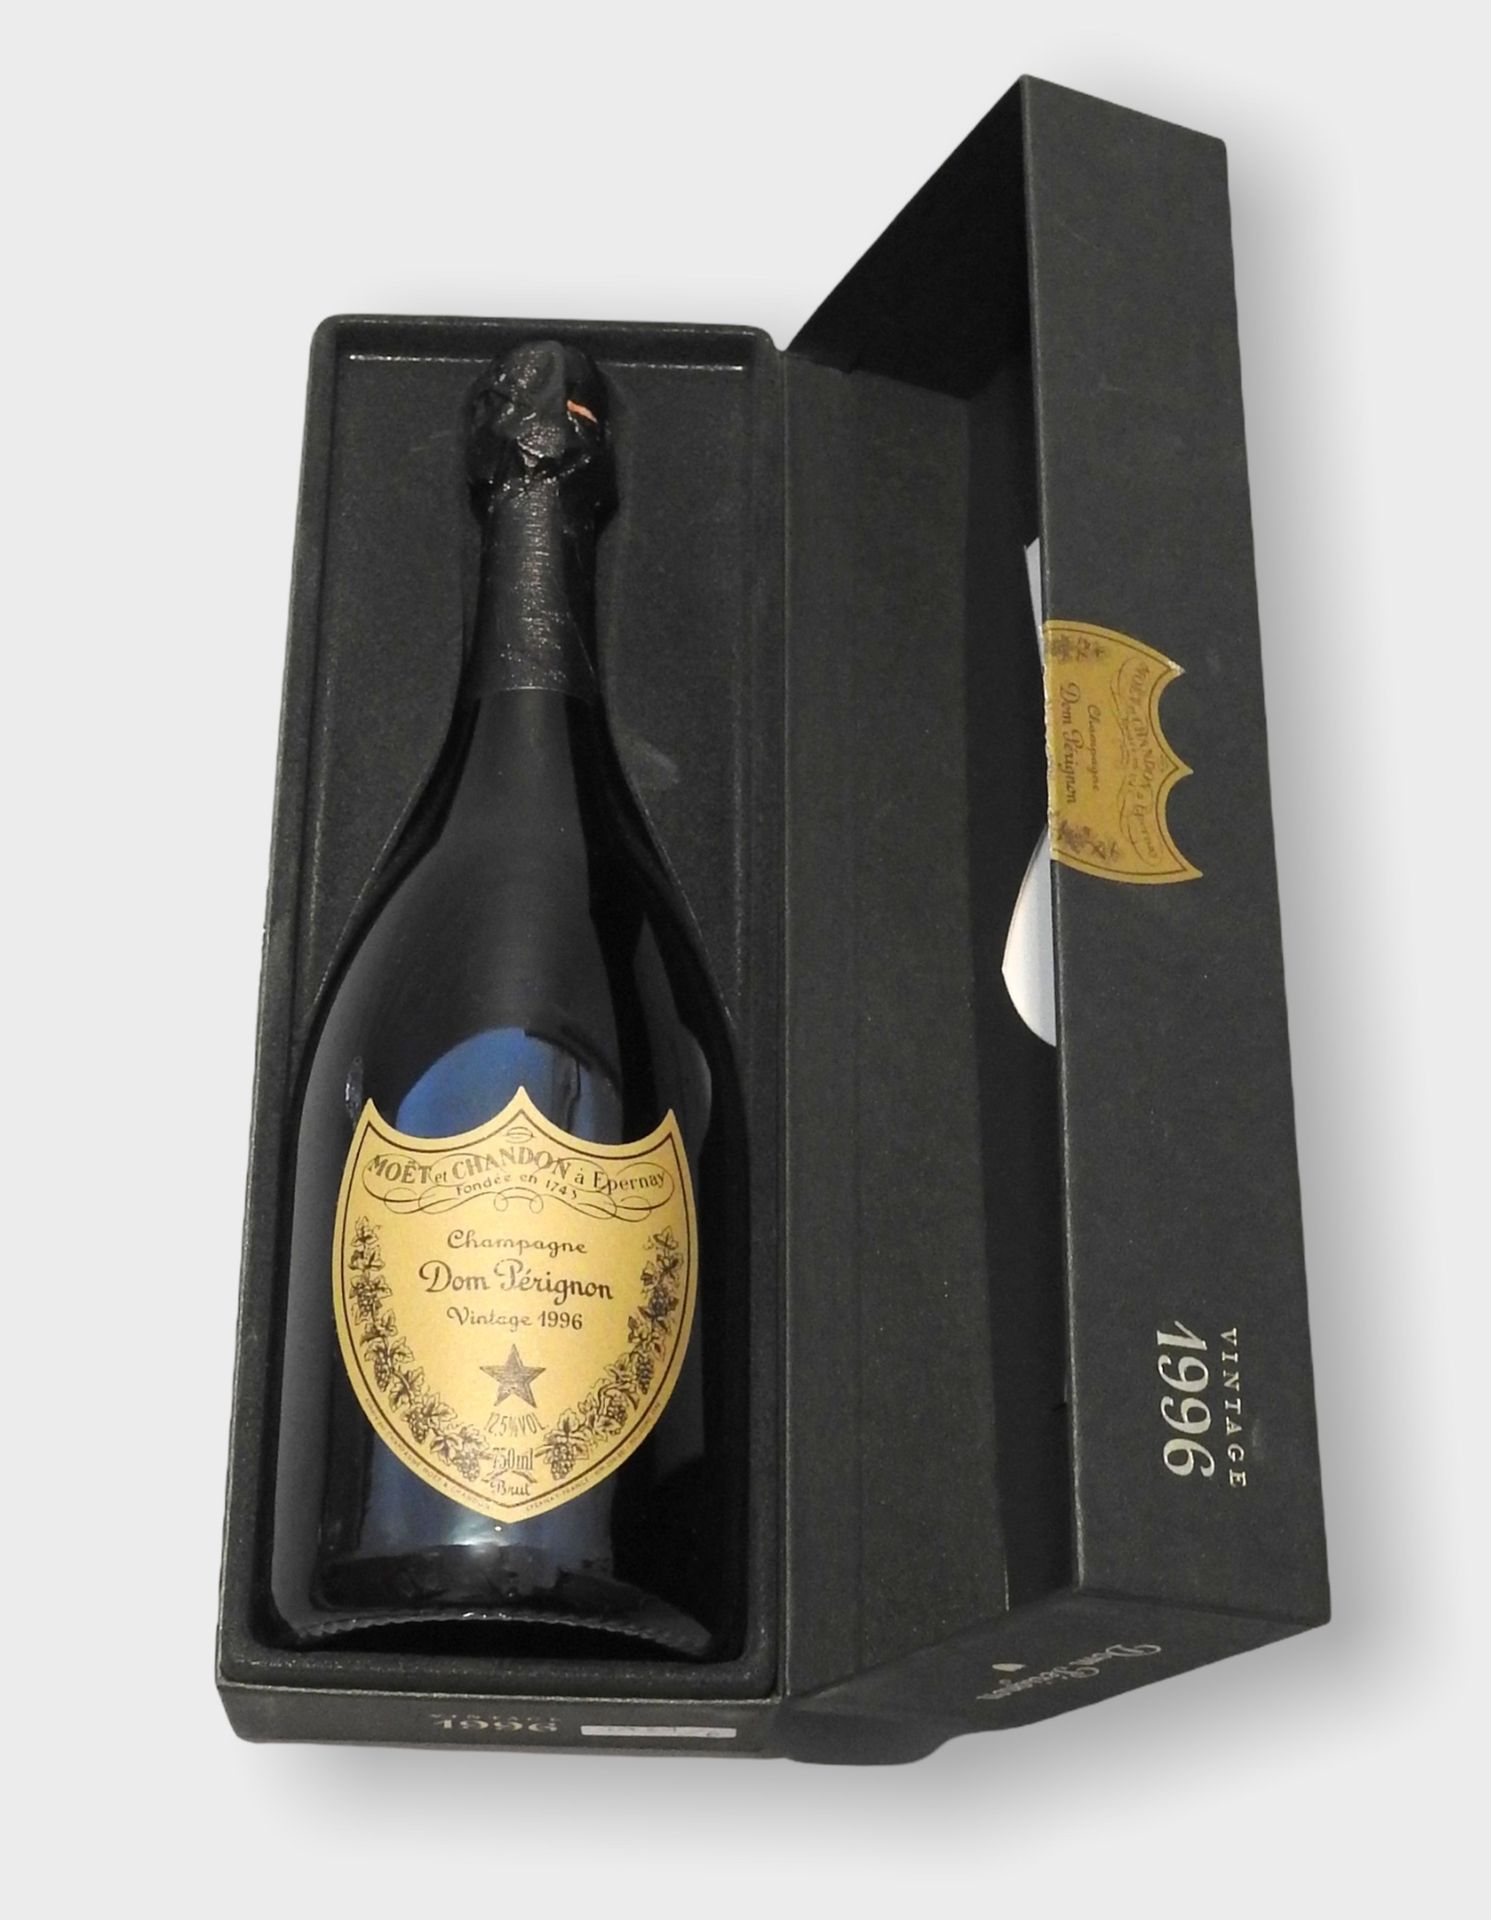 Dom Perignon Vintage Champagne Cuvée, Moët Chandon, vintage 1996, content 750 ml&hellip;